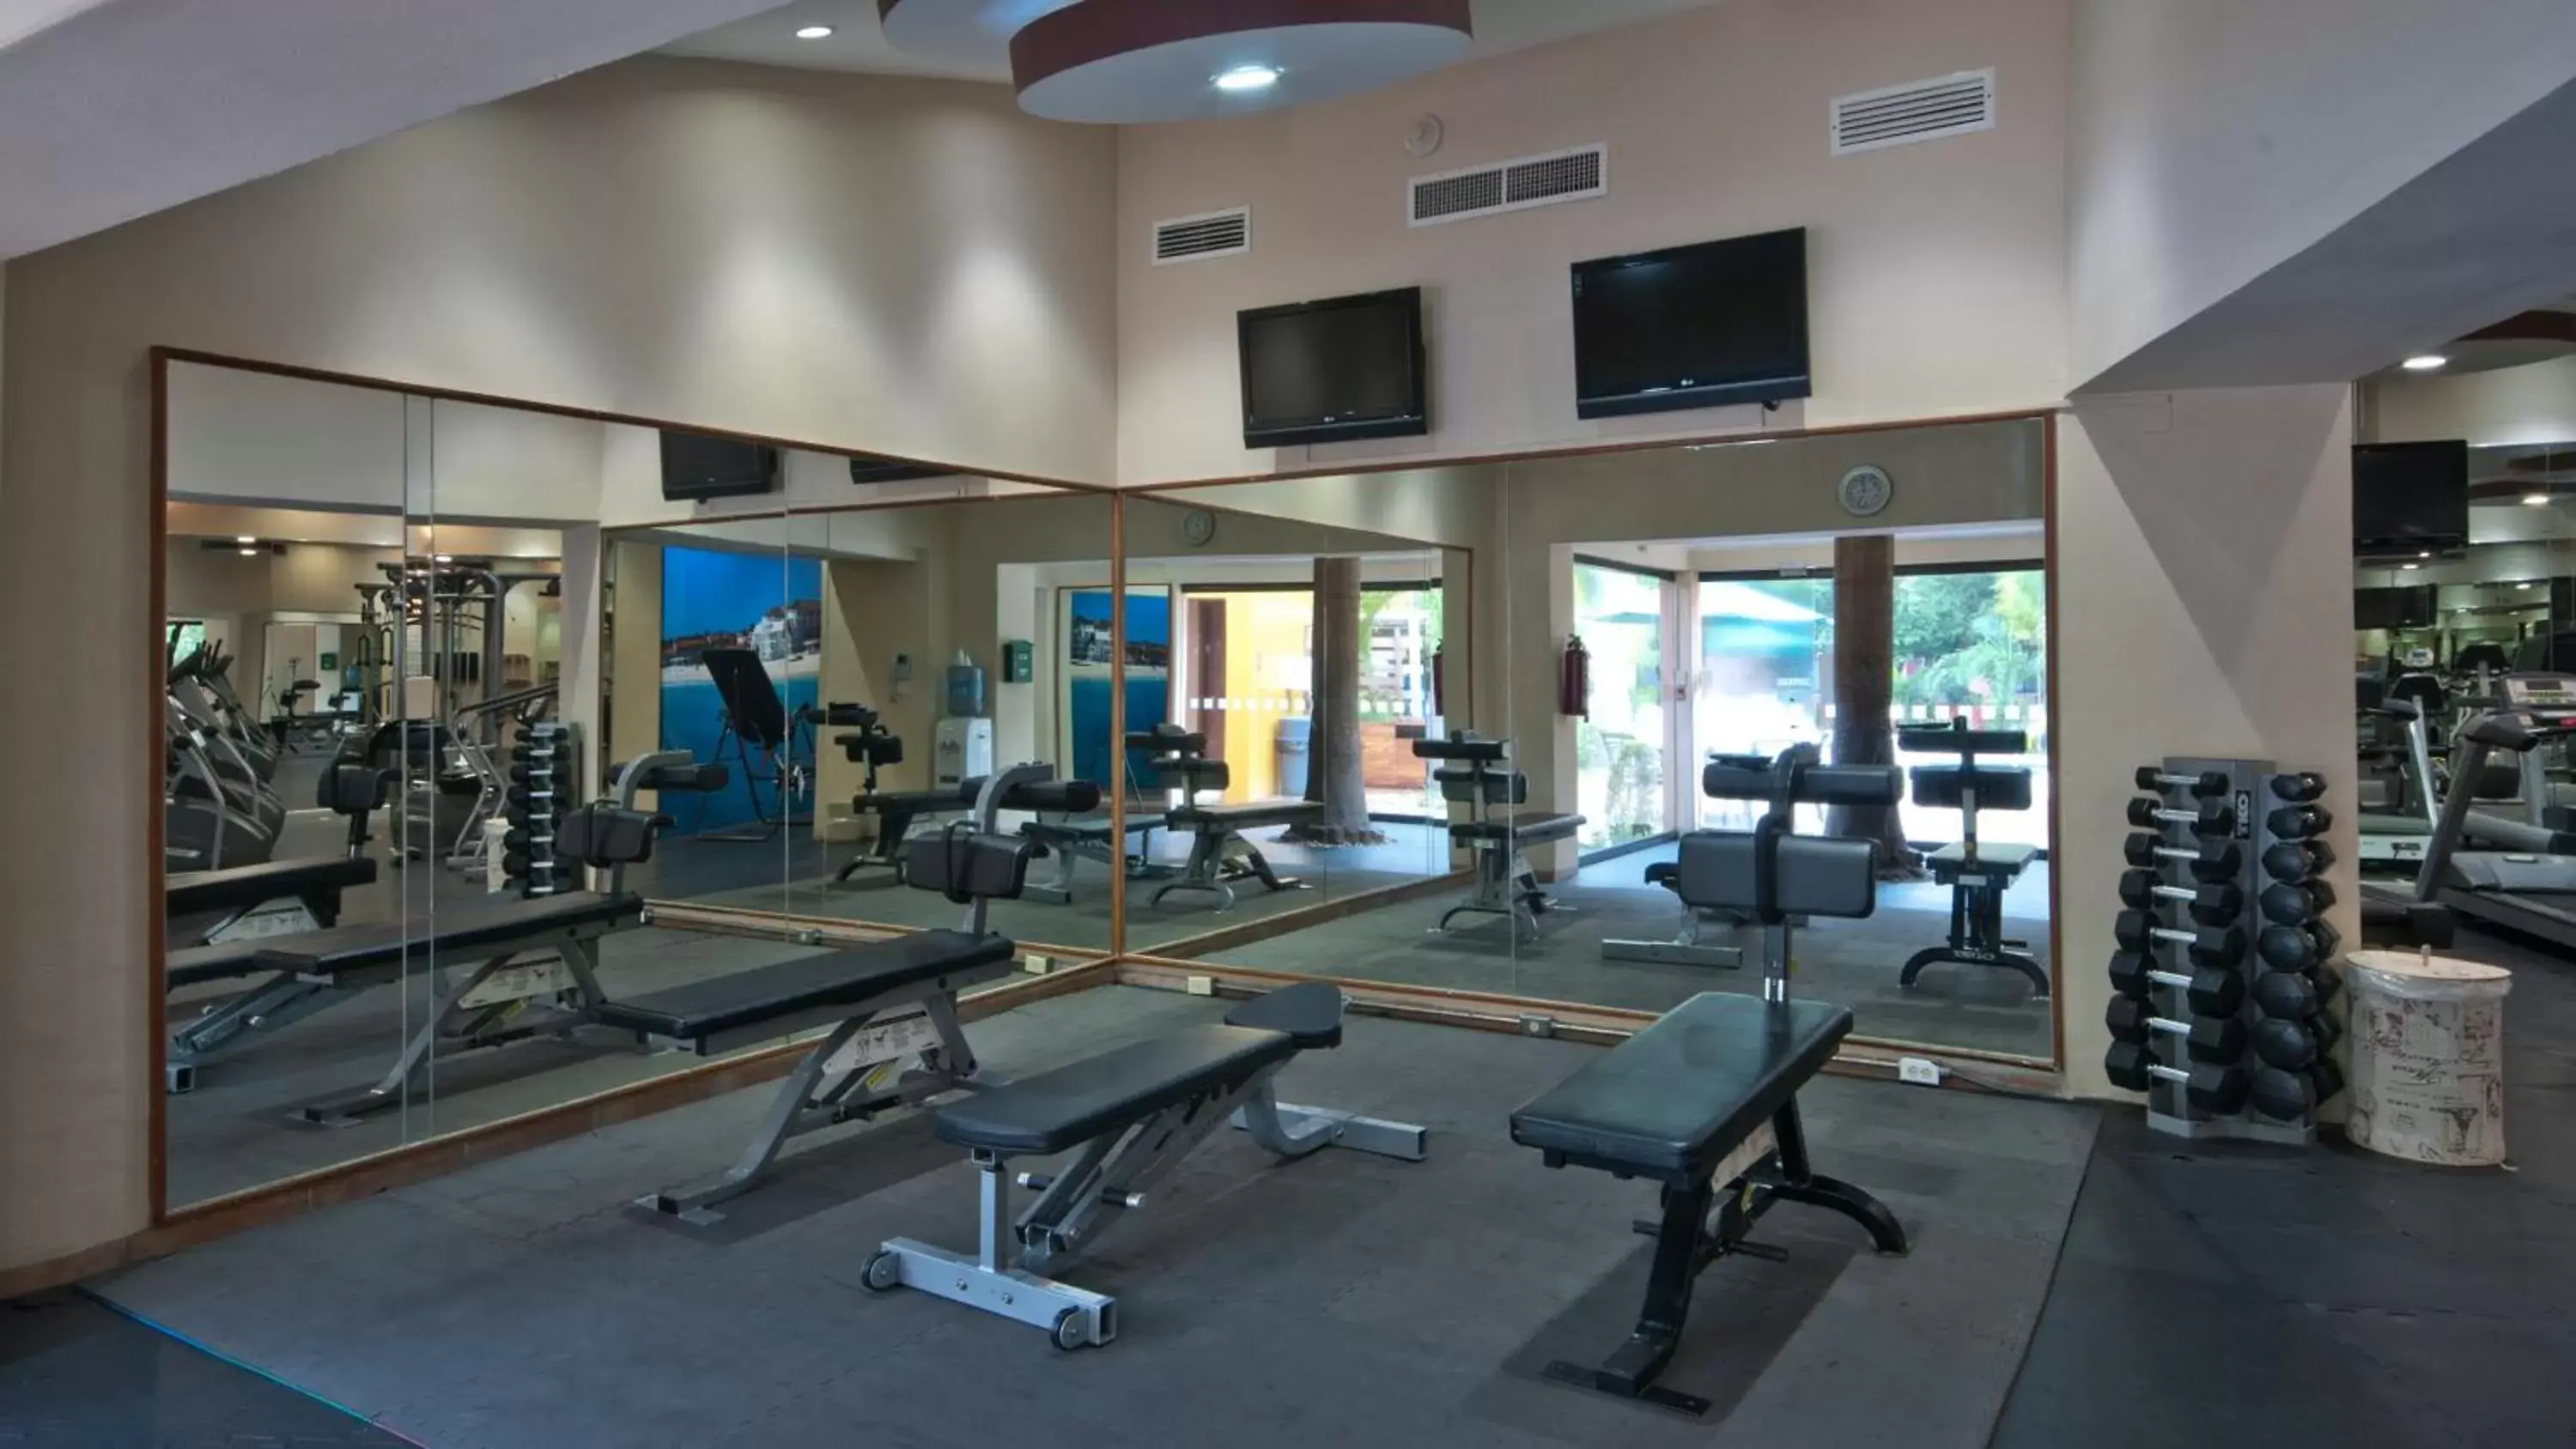 Fitness centre/facilities, Fitness Center/Facilities in Holiday Inn Ciudad Del Carmen, an IHG Hotel